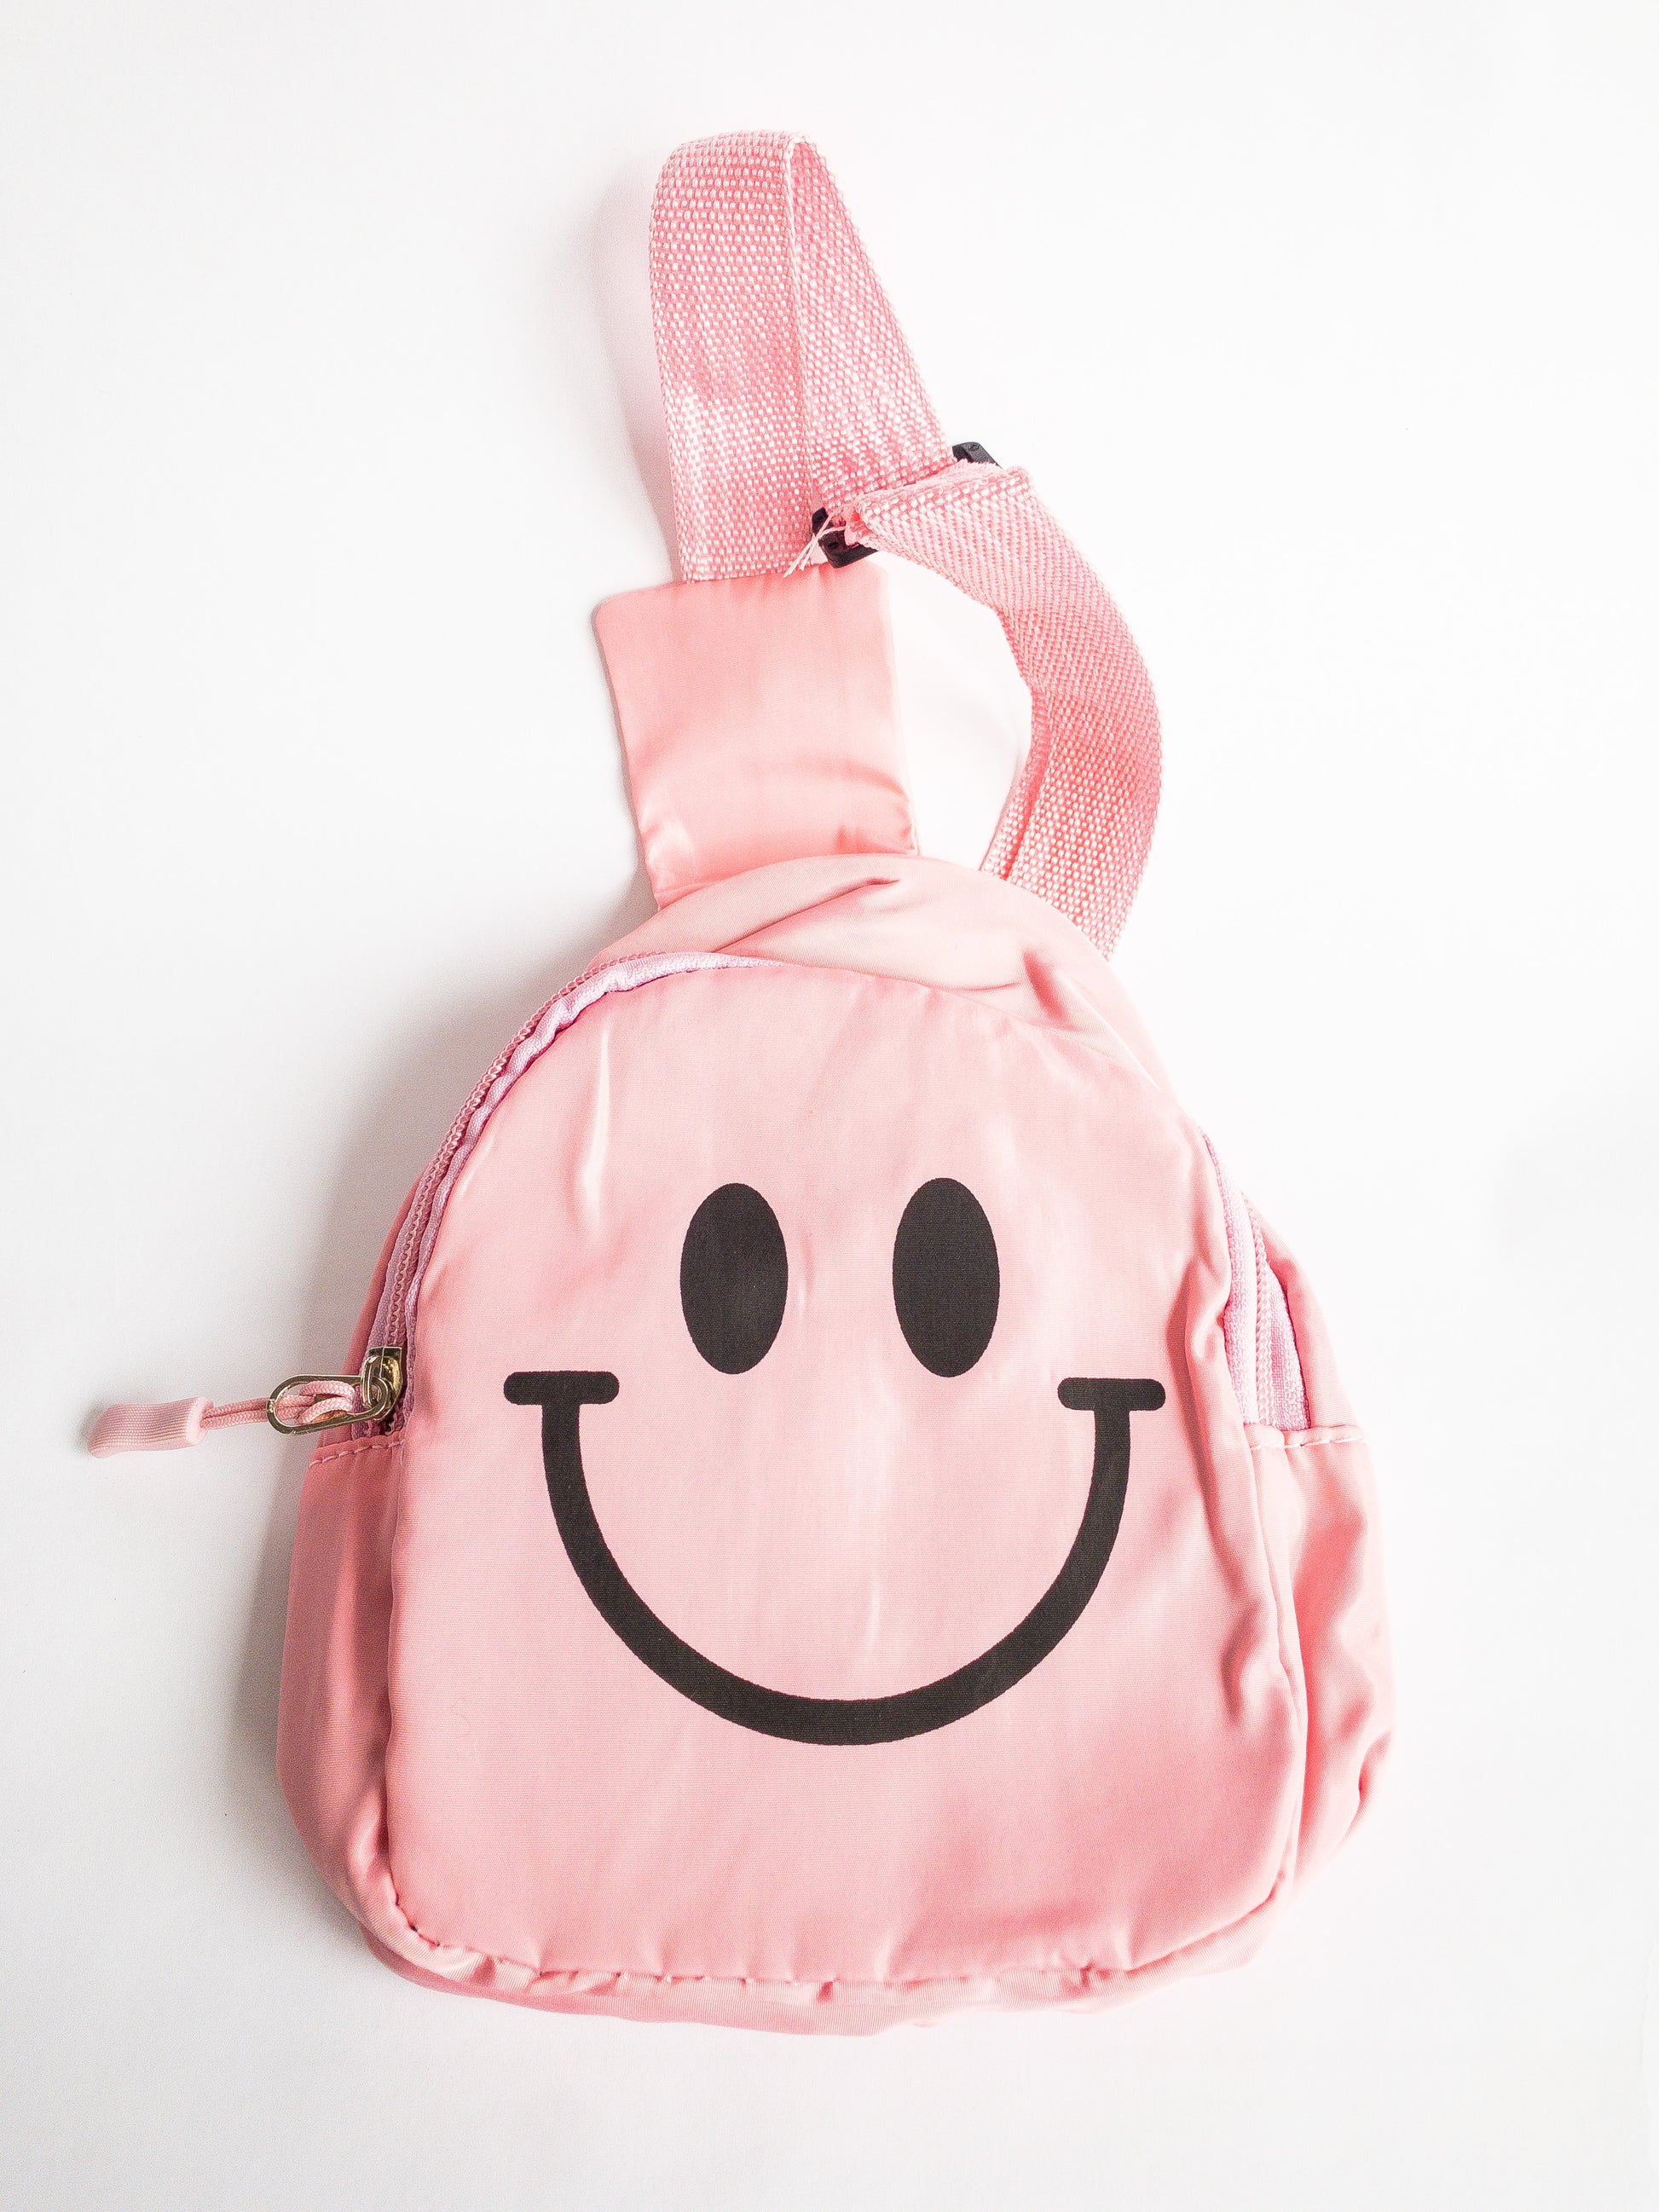 Smiley Face Crossbody Bag